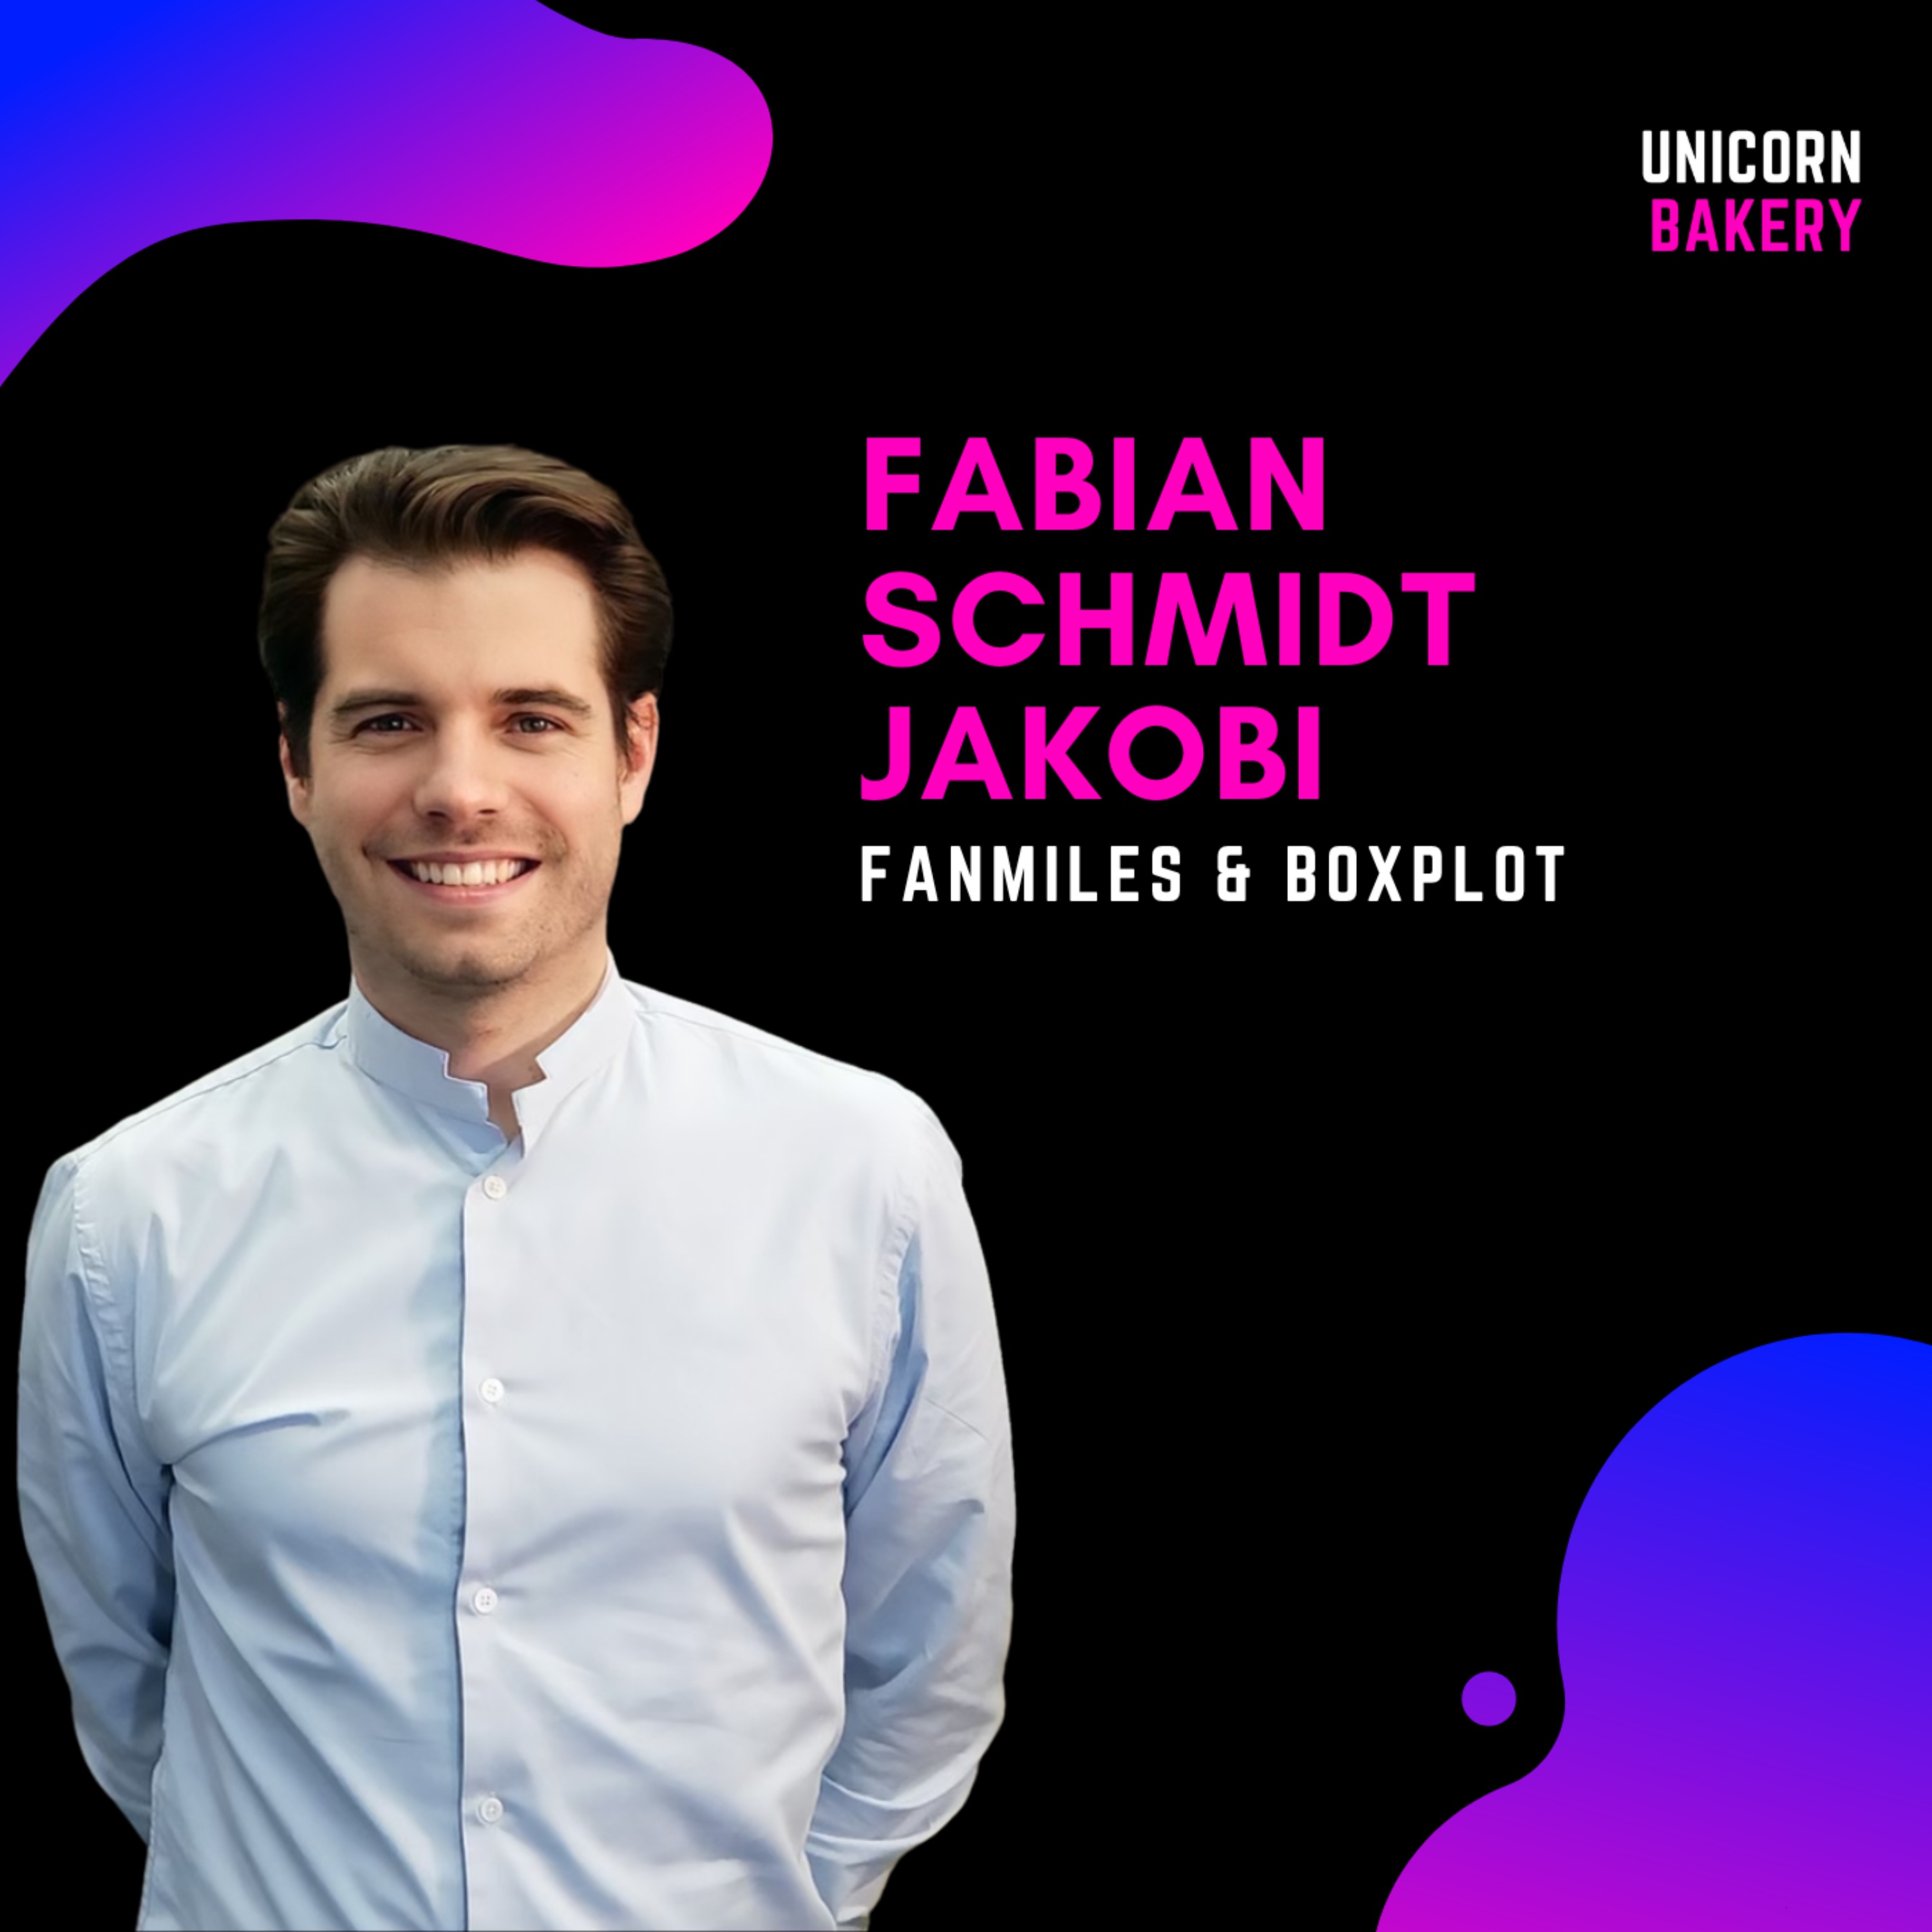 Als Gründer 0€ an einem Firmenverkauf verdient - doch lieber bootstrapping? – Fabian Schmidt Jakobi, Fanmiles & Boxplot